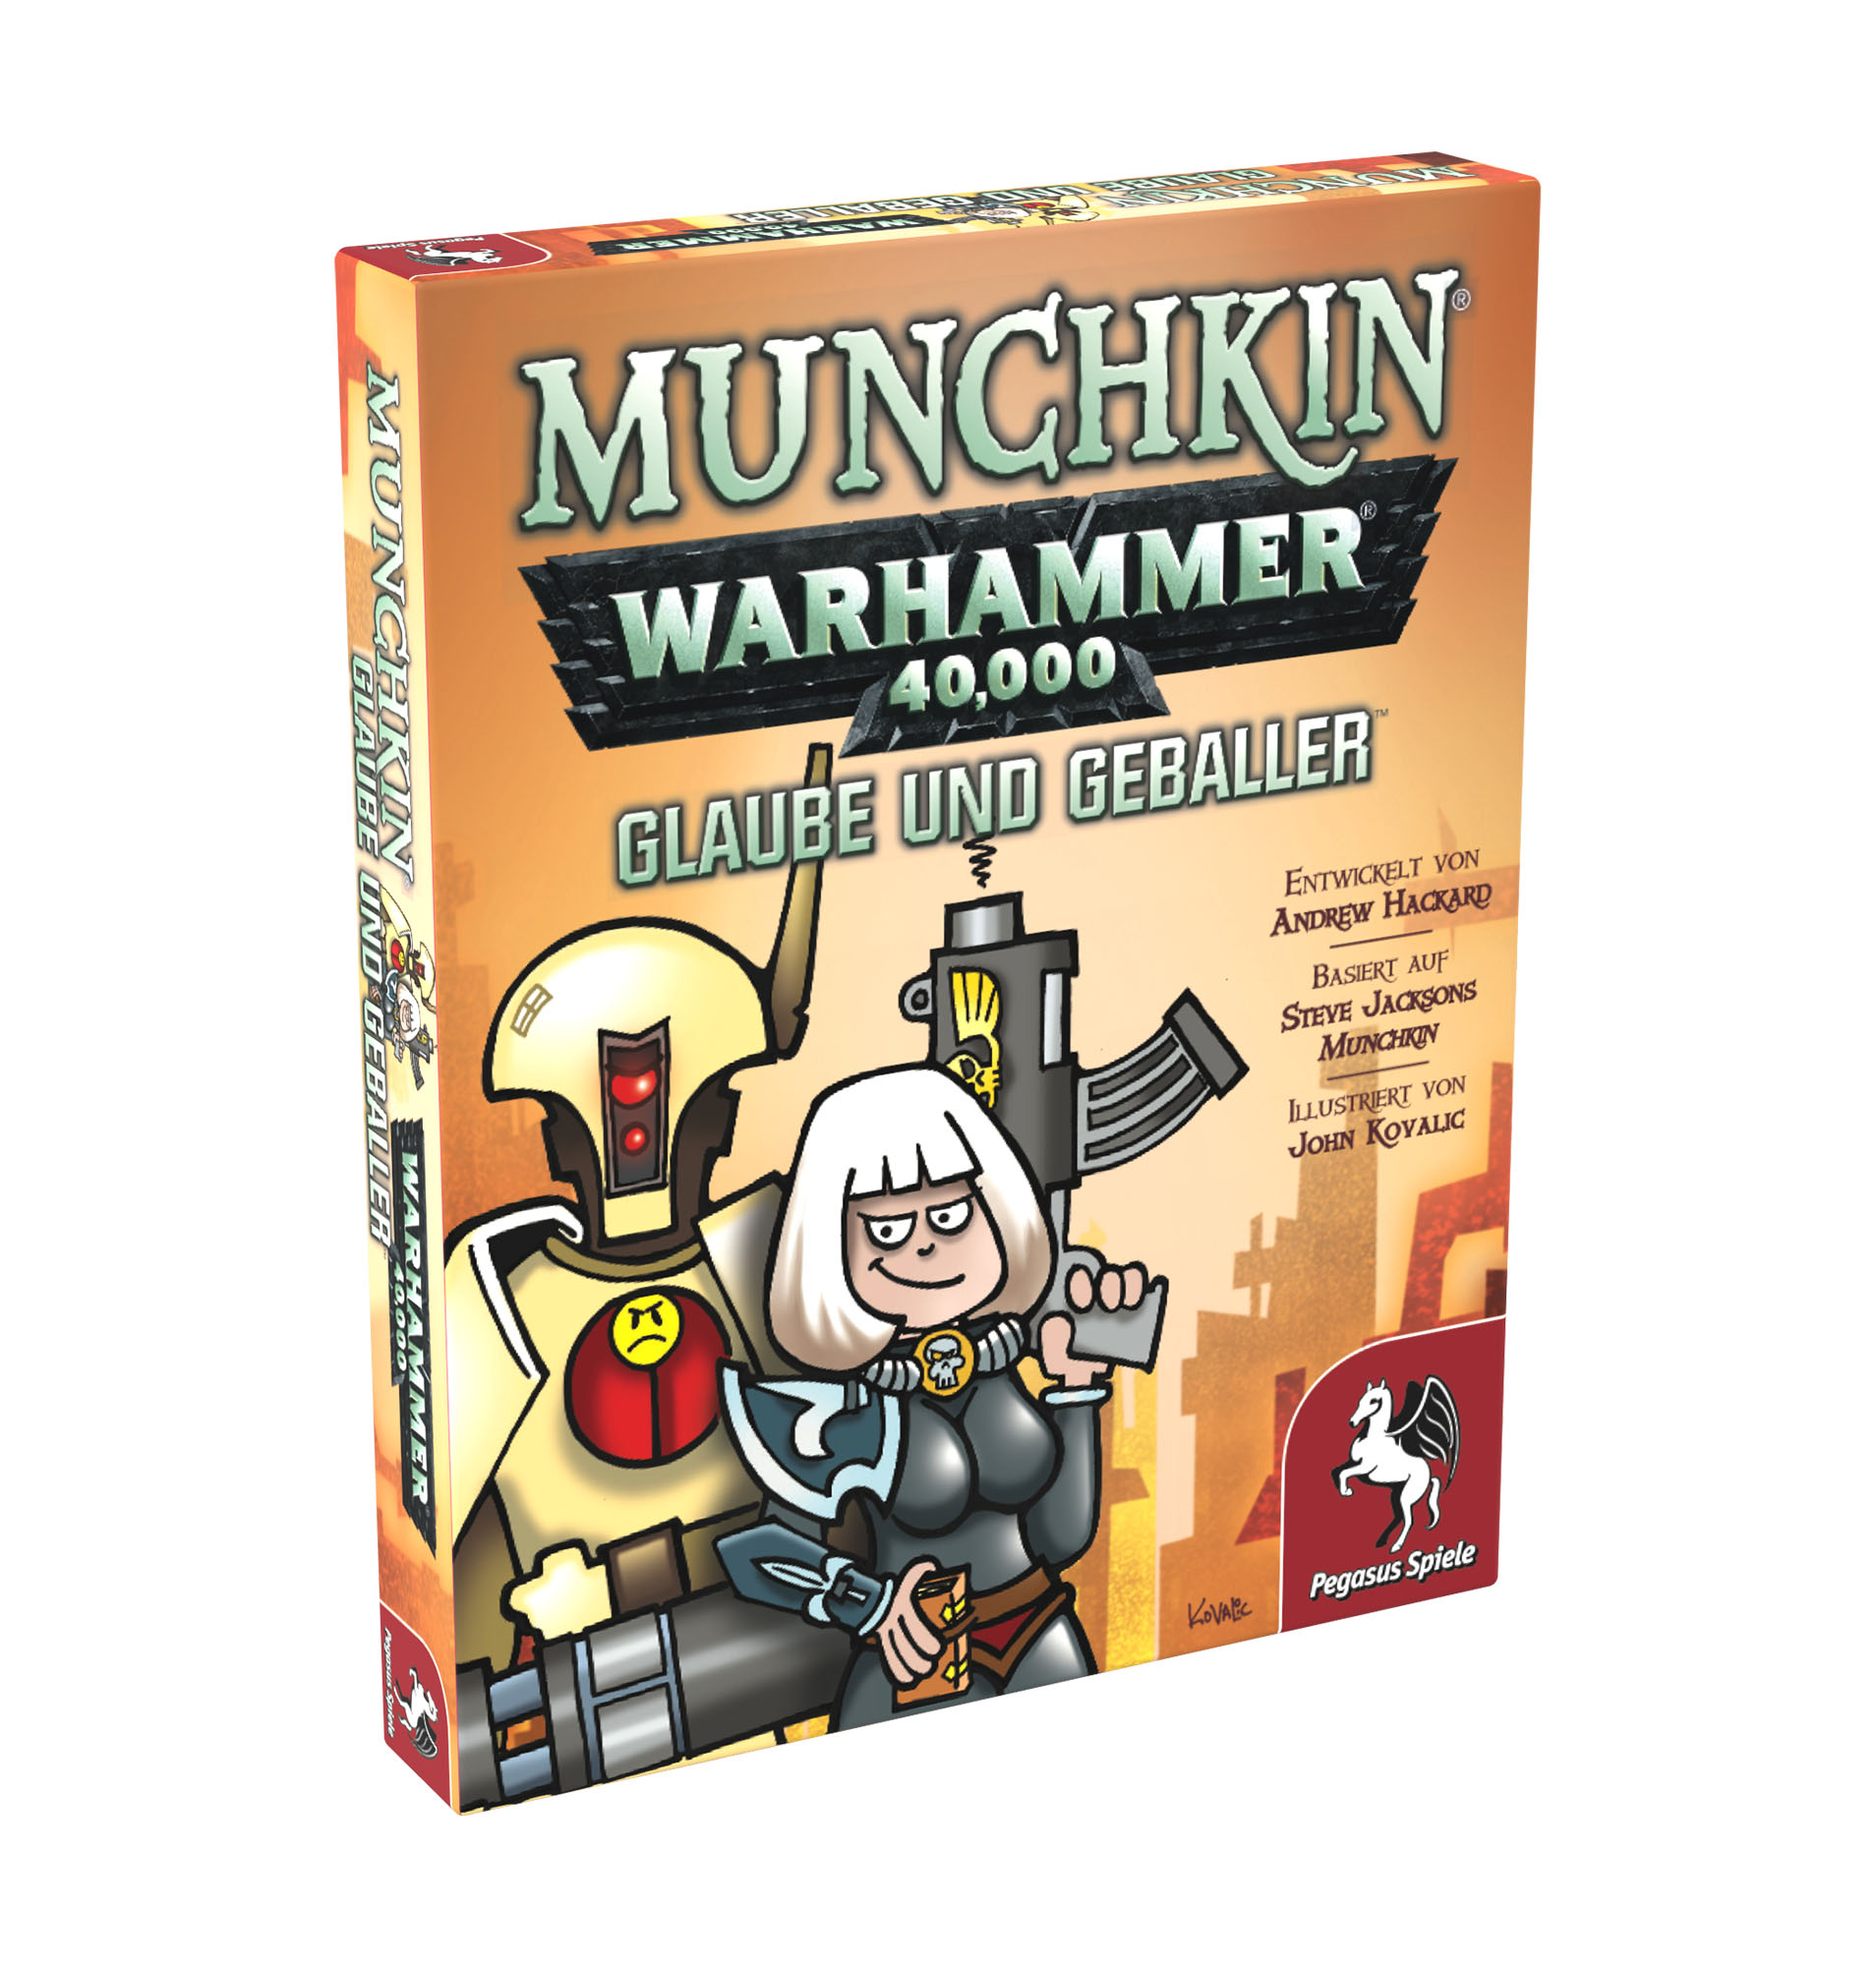 Pegasus NEU&OVP Munchkin Erweiterung Glaube und Geballer Warhammer 40.000 